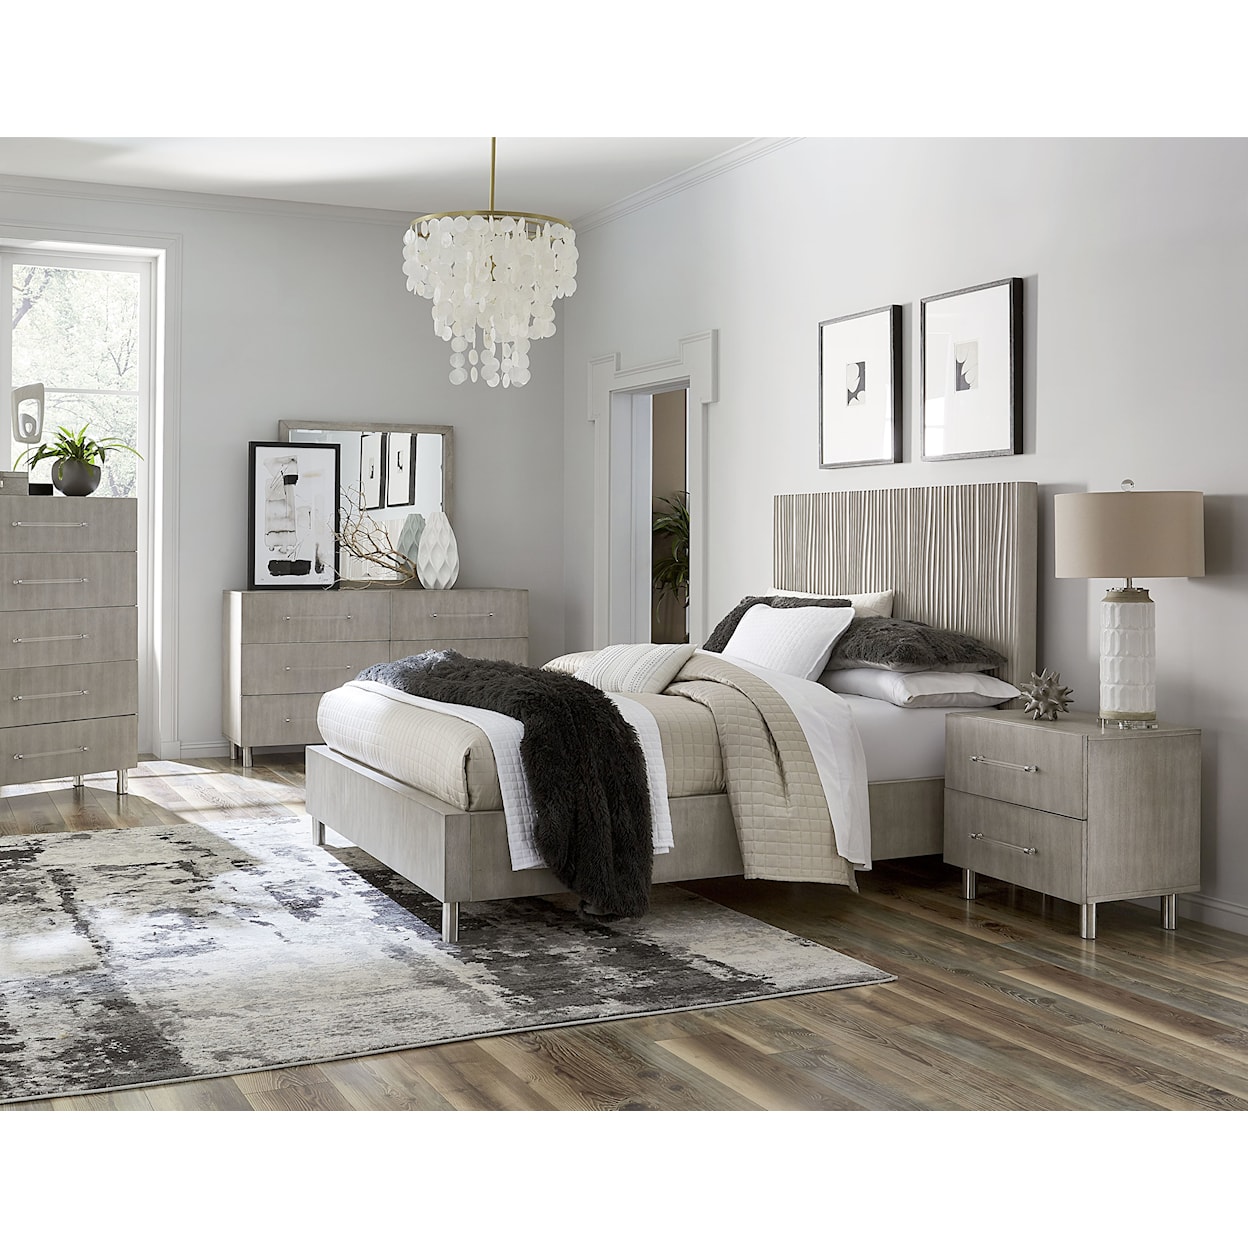 Modus International Argento 5 Piece Queen Bedroom Set with Dresser